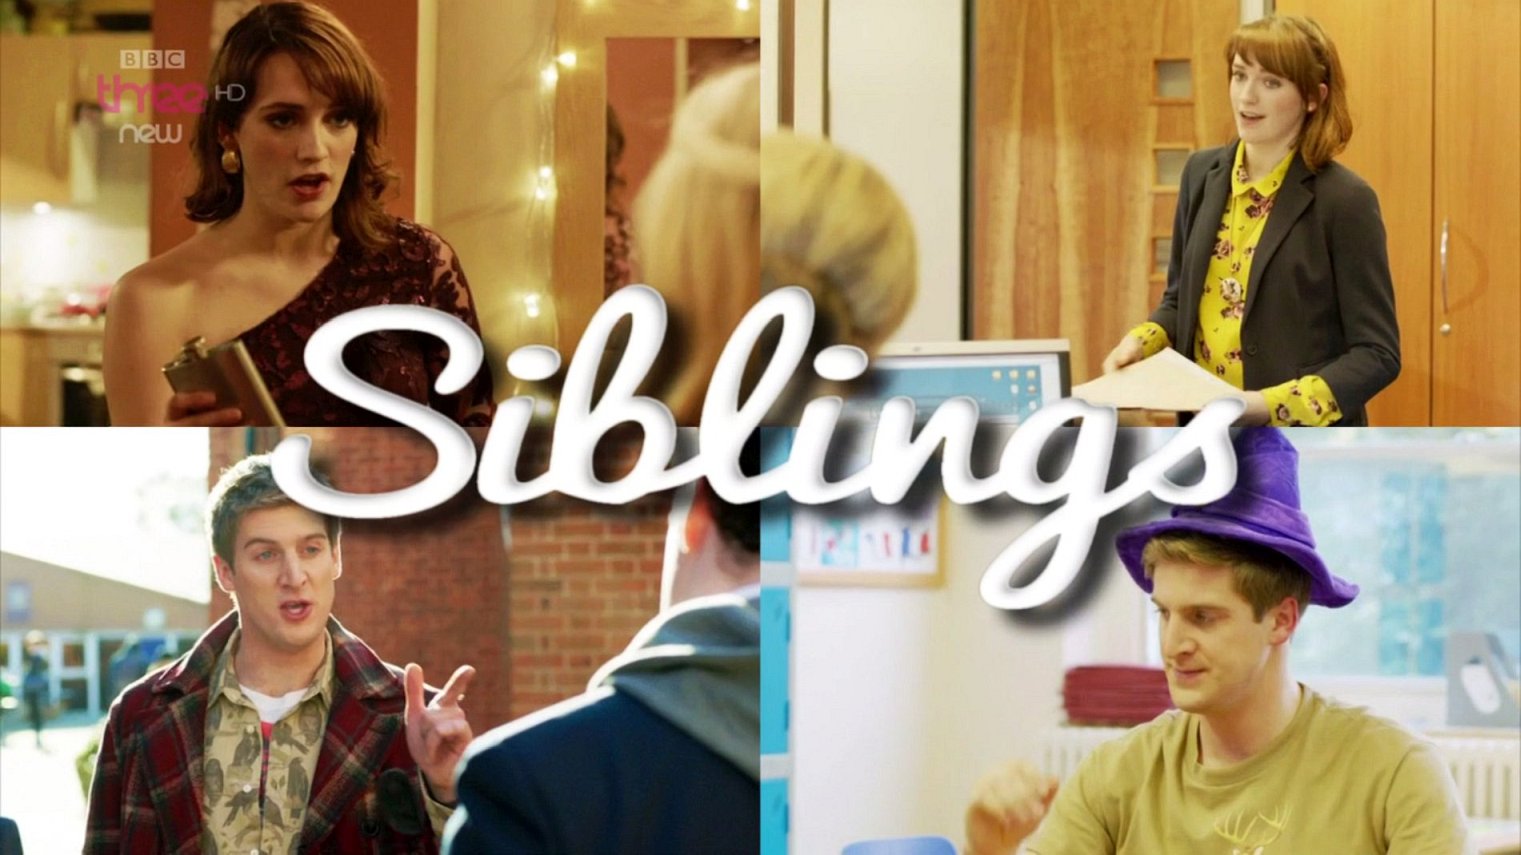 cast of Siblings season 2